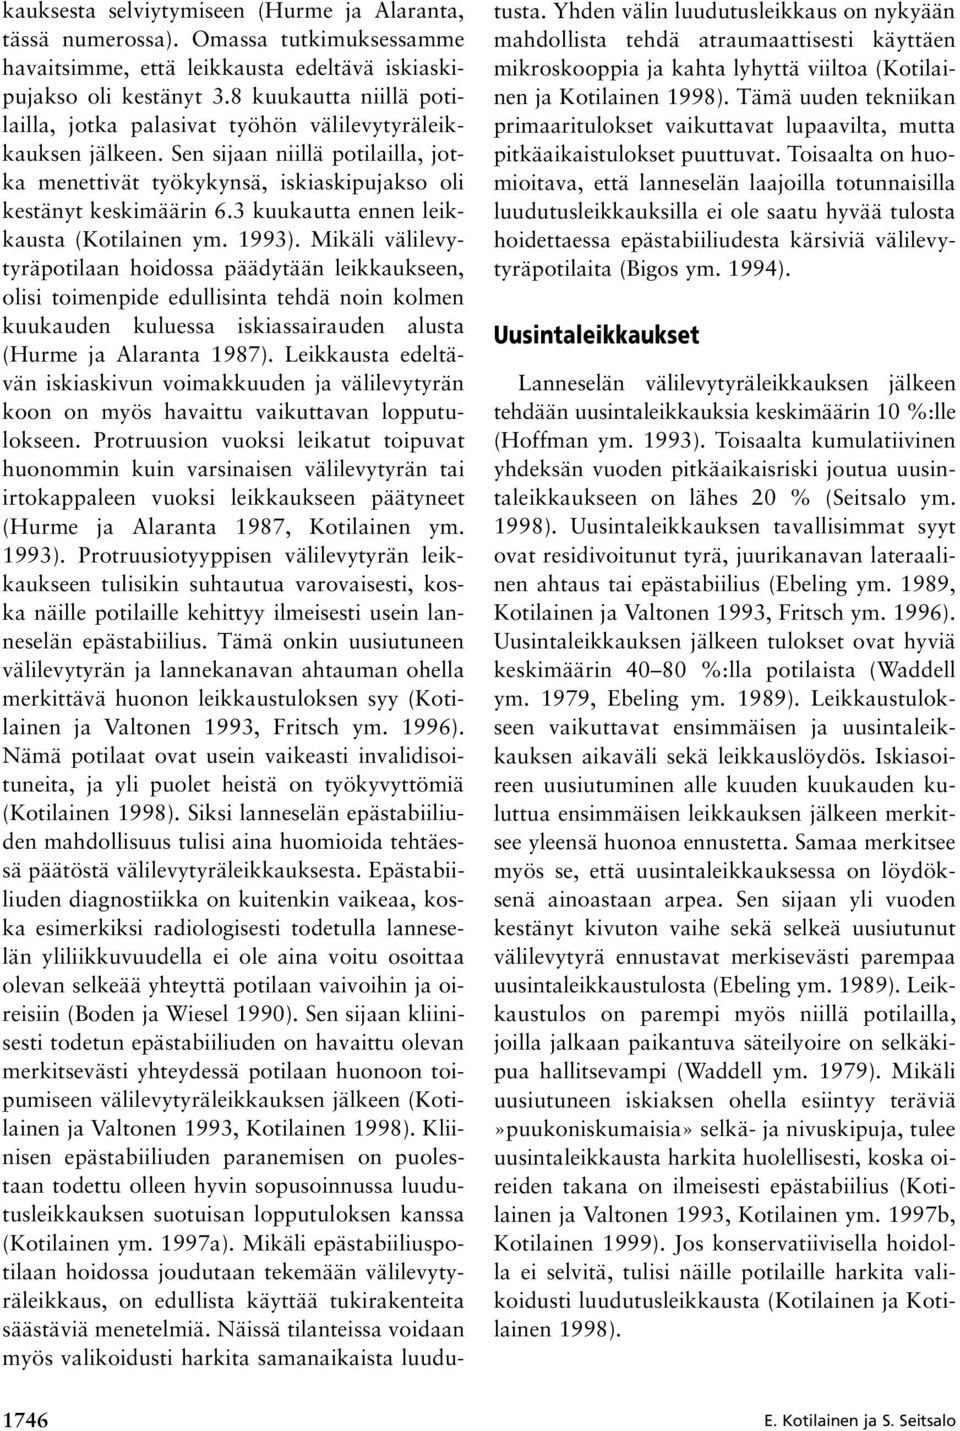 3 kuukautta ennen leikkausta (Kotilainen ym. 1993).